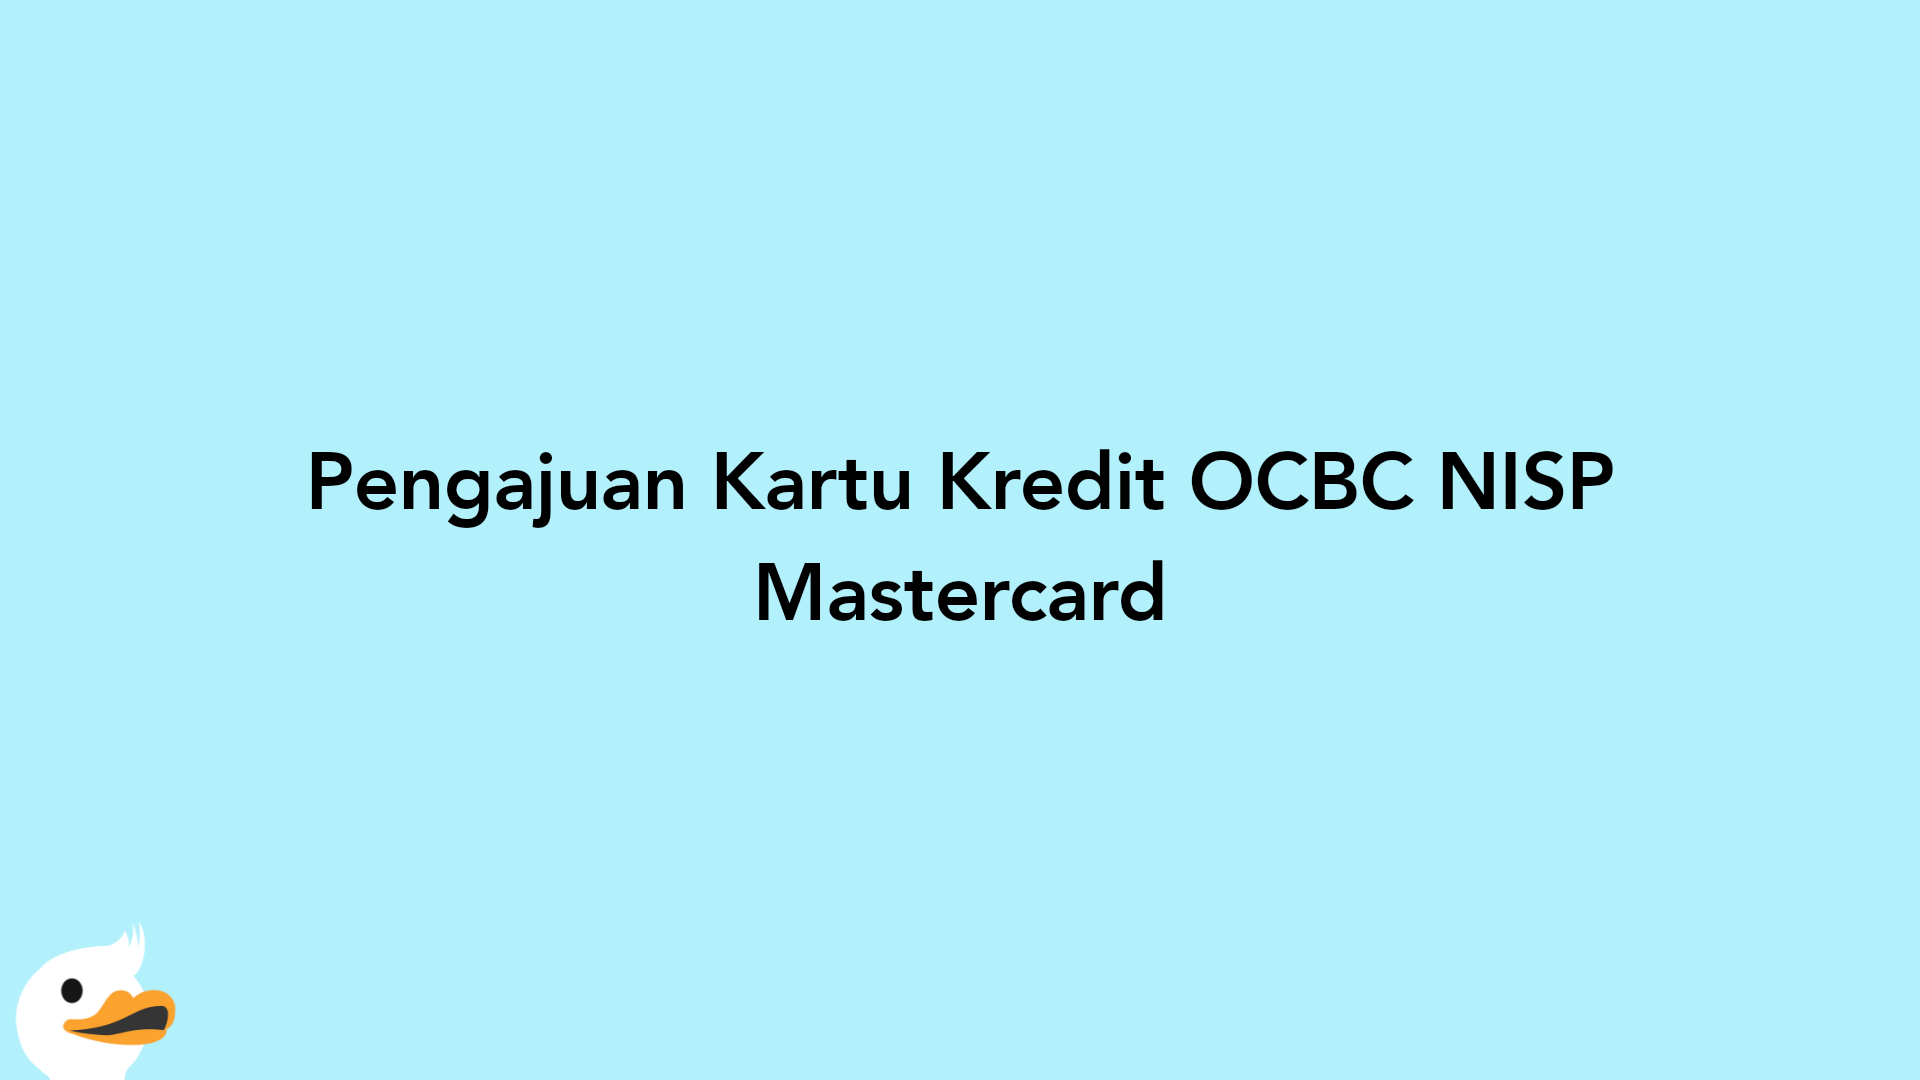 Pengajuan Kartu Kredit OCBC NISP Mastercard